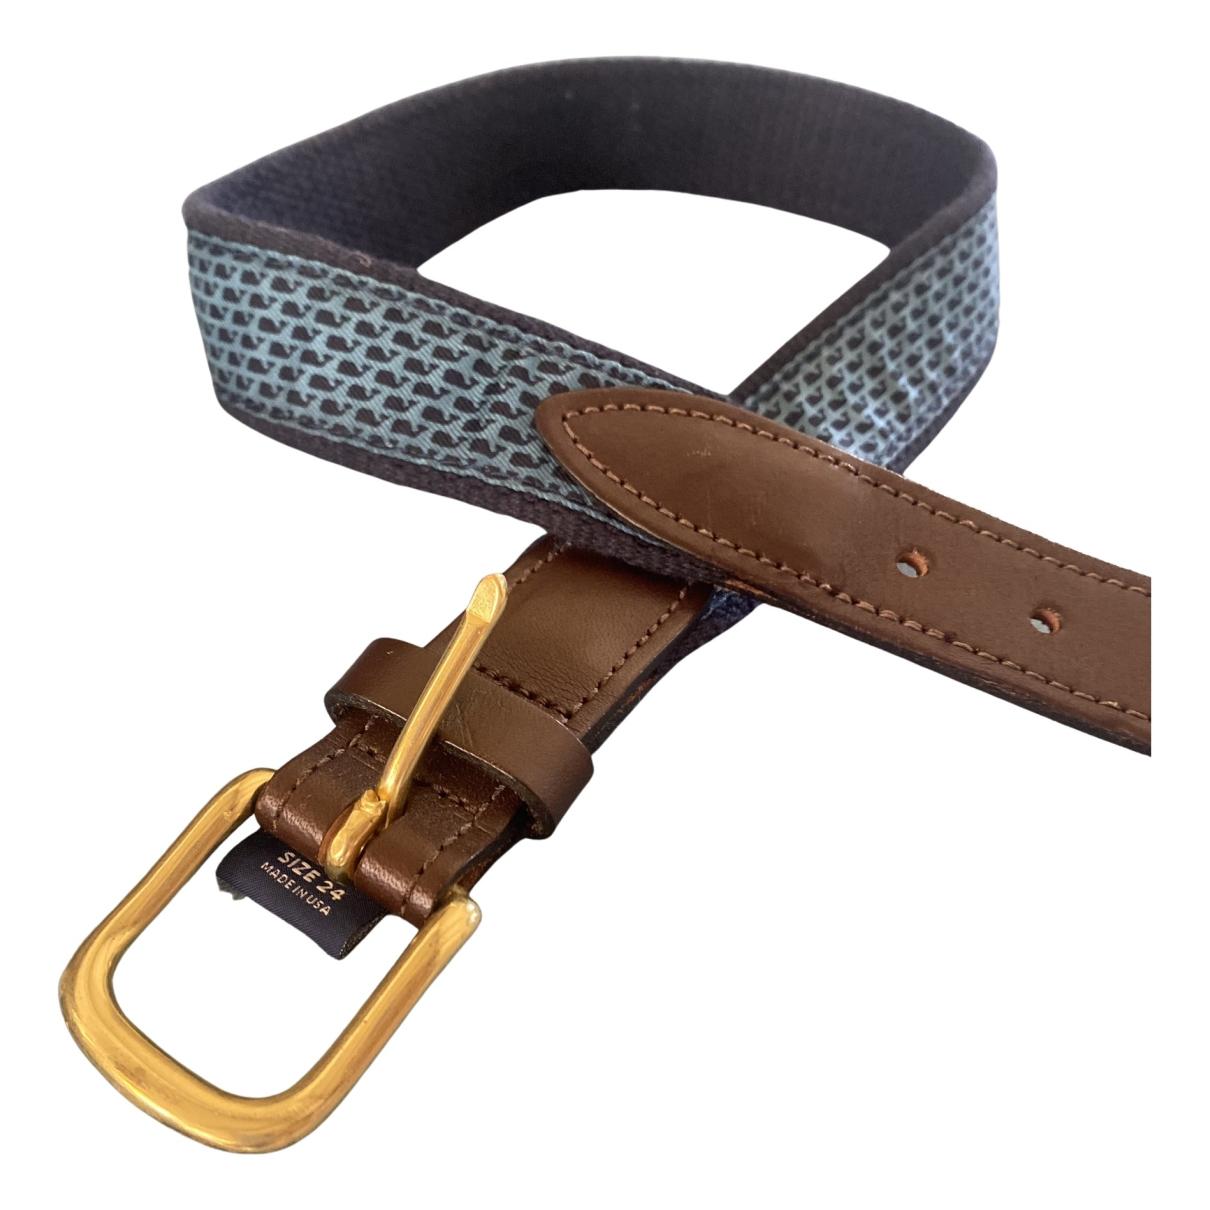 Cloth belts/suspenders Vineyard Vines